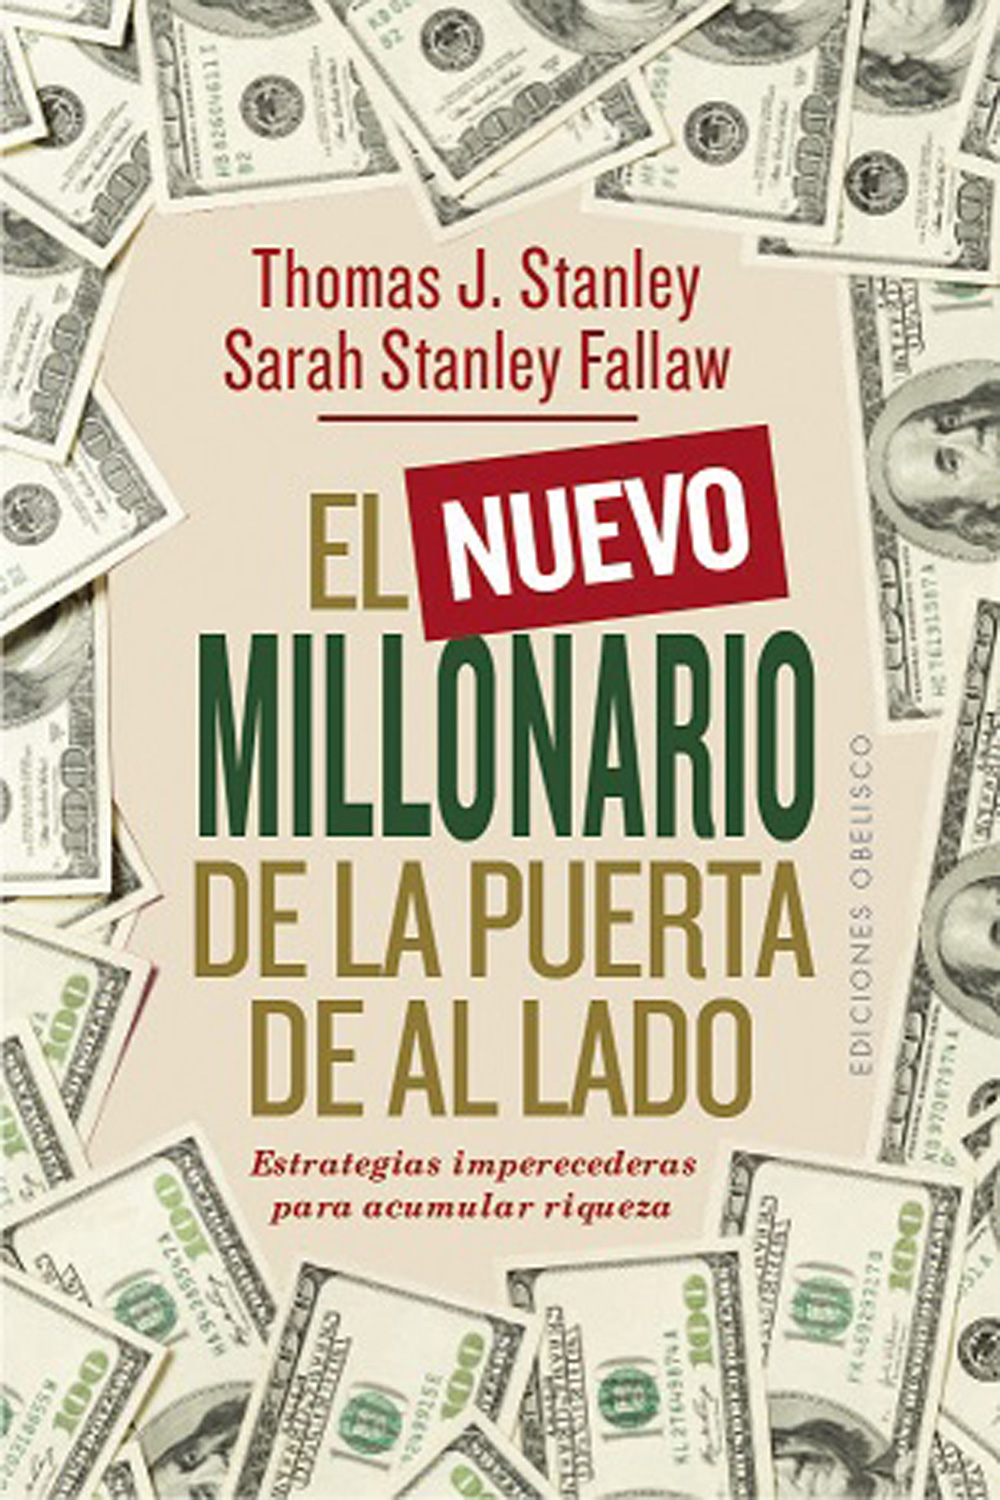 El millonario de al lado - Resumen del libro para tu educación financiera